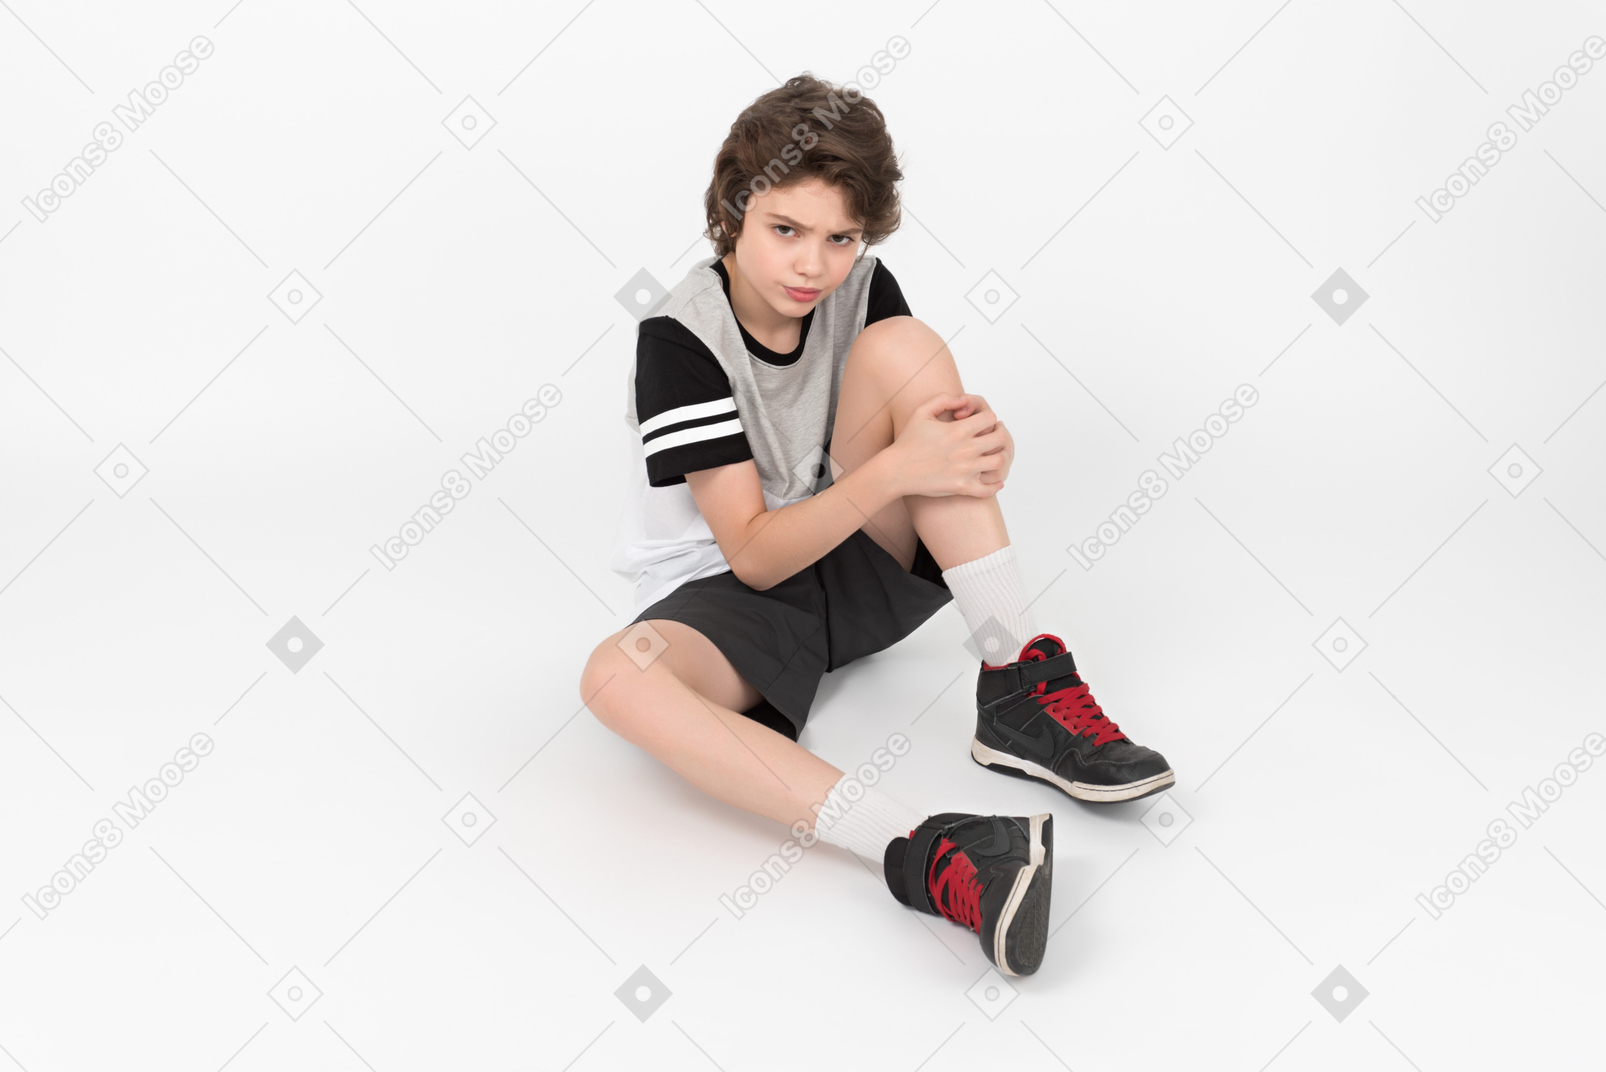 Garoto atlético mal-humorado está sentado no chão e tocando sua perna